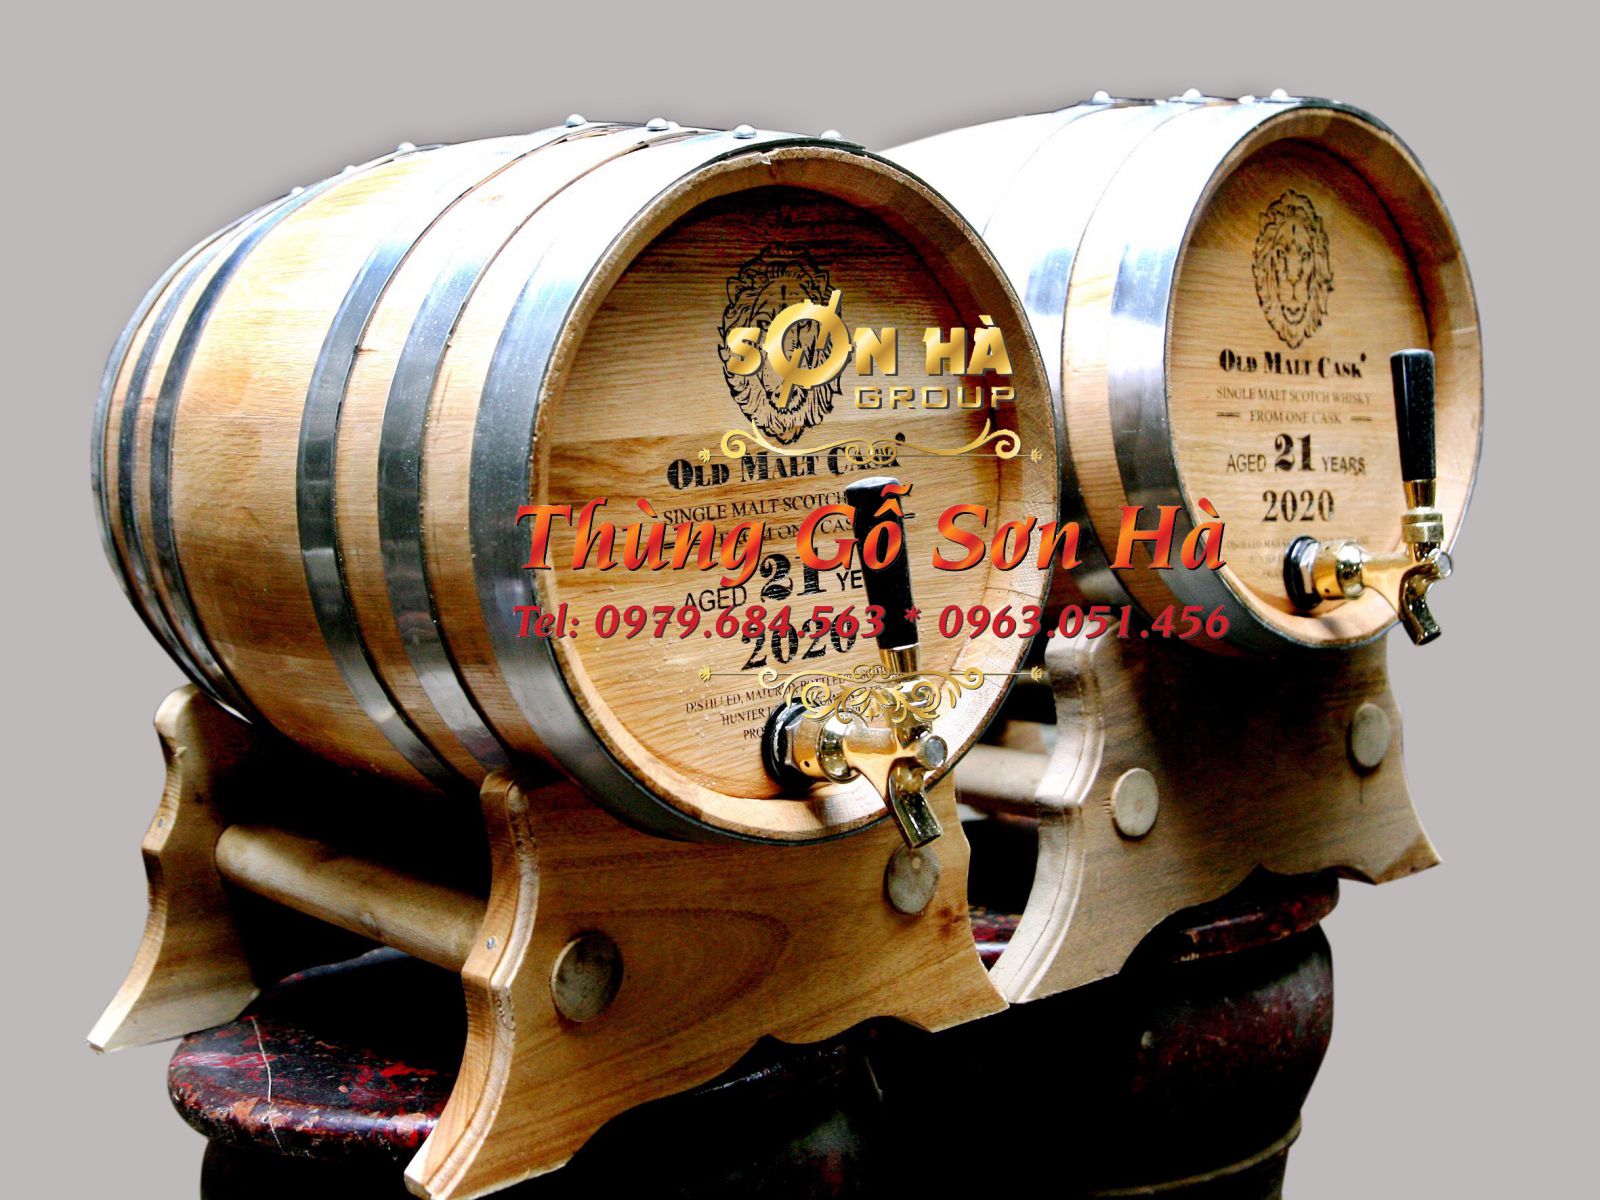 Thứ nhất, ủ rượu trong thùng gỗ sồi giúp khử độc rượu